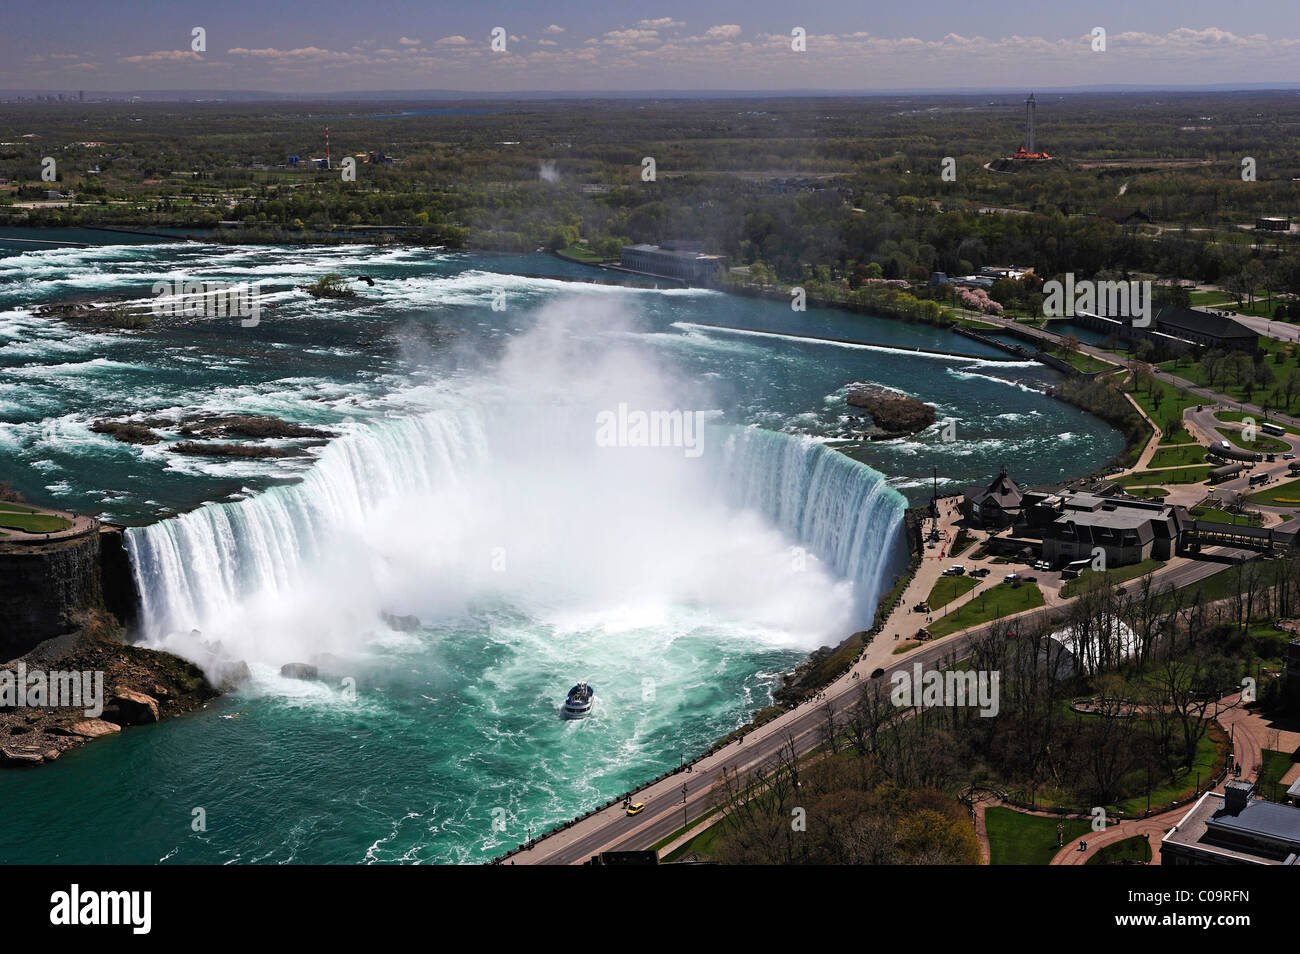 Niagara Falls seen from the Skylon Tower, Ontario, Canada Stock Photo